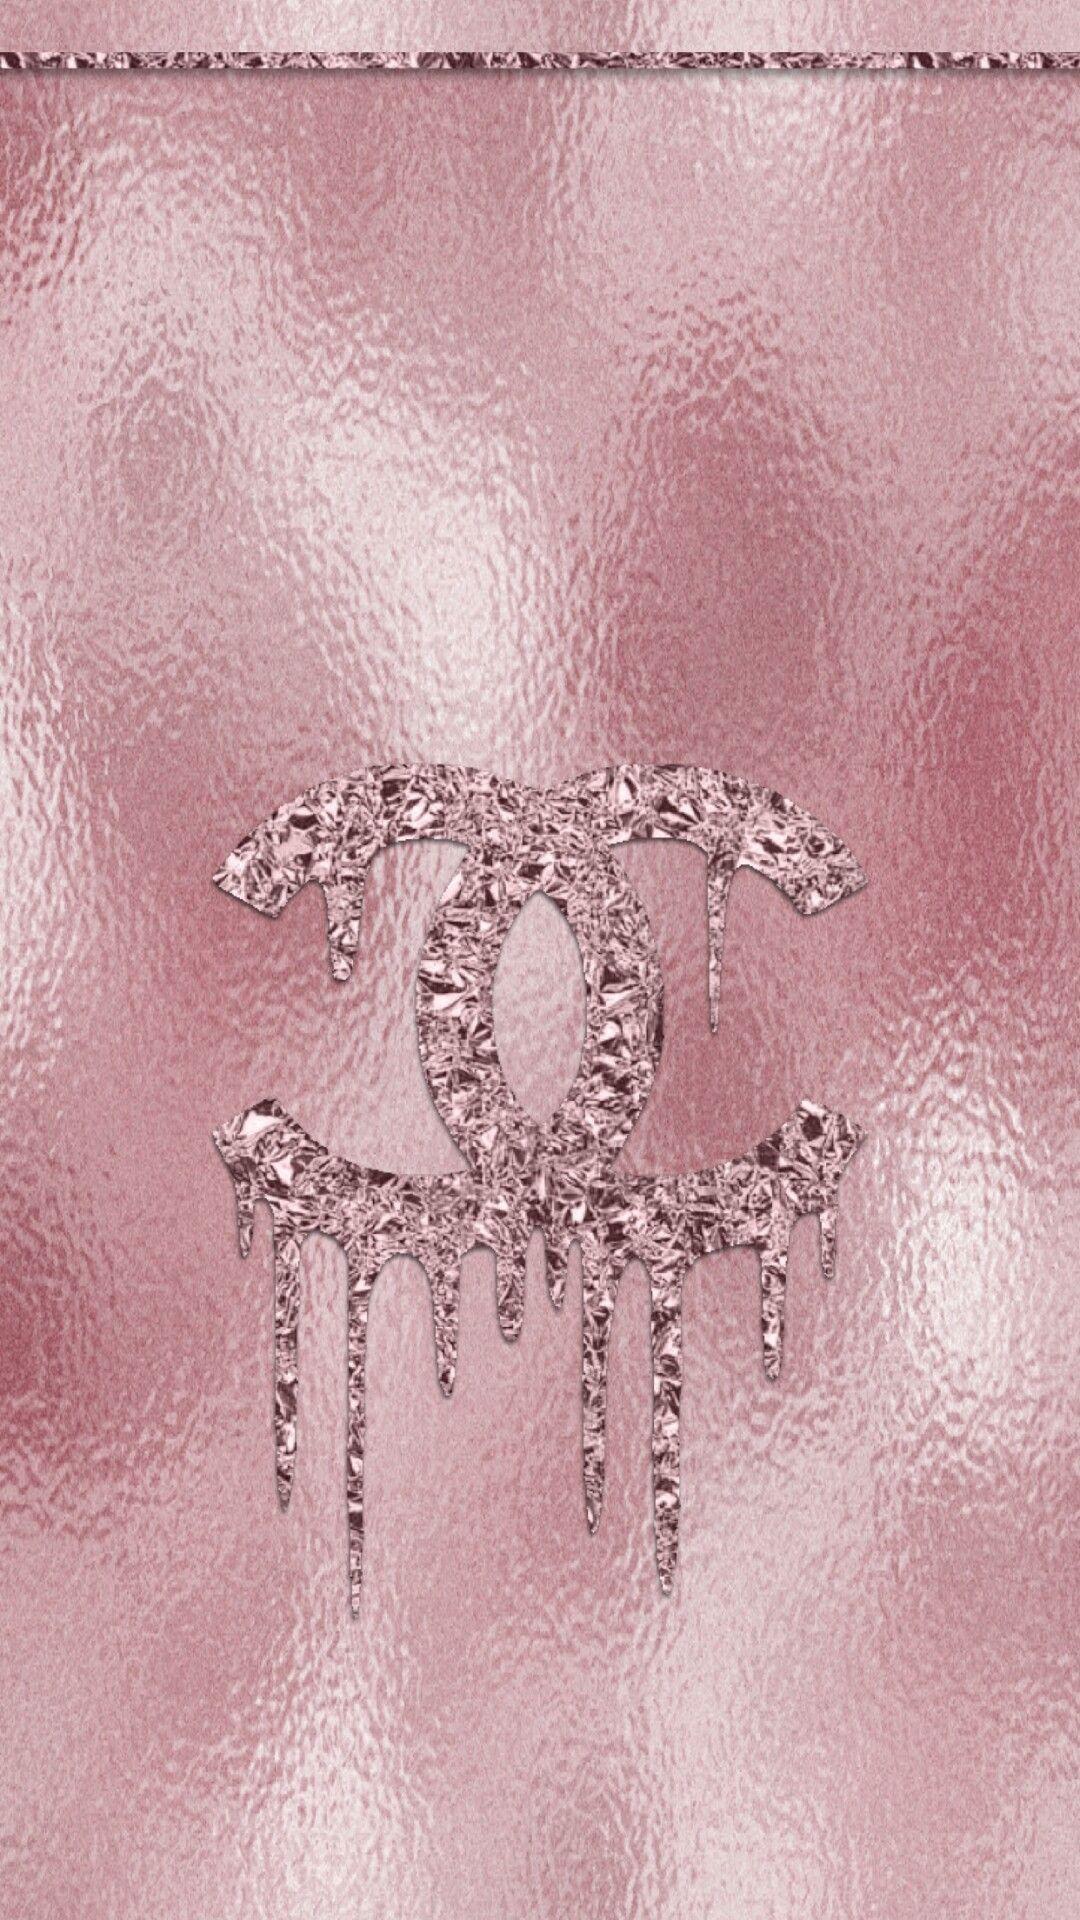 Nền vàng hồng Gucci đầy sức hấp dẫn sẽ khiến bất kỳ ai cũng say đắm. Với hình nền đẹp và đầy kiêu hãnh, bạn sẽ khiến người ta phải đinh ninh lúc loay hoay với điện thoại của mình.